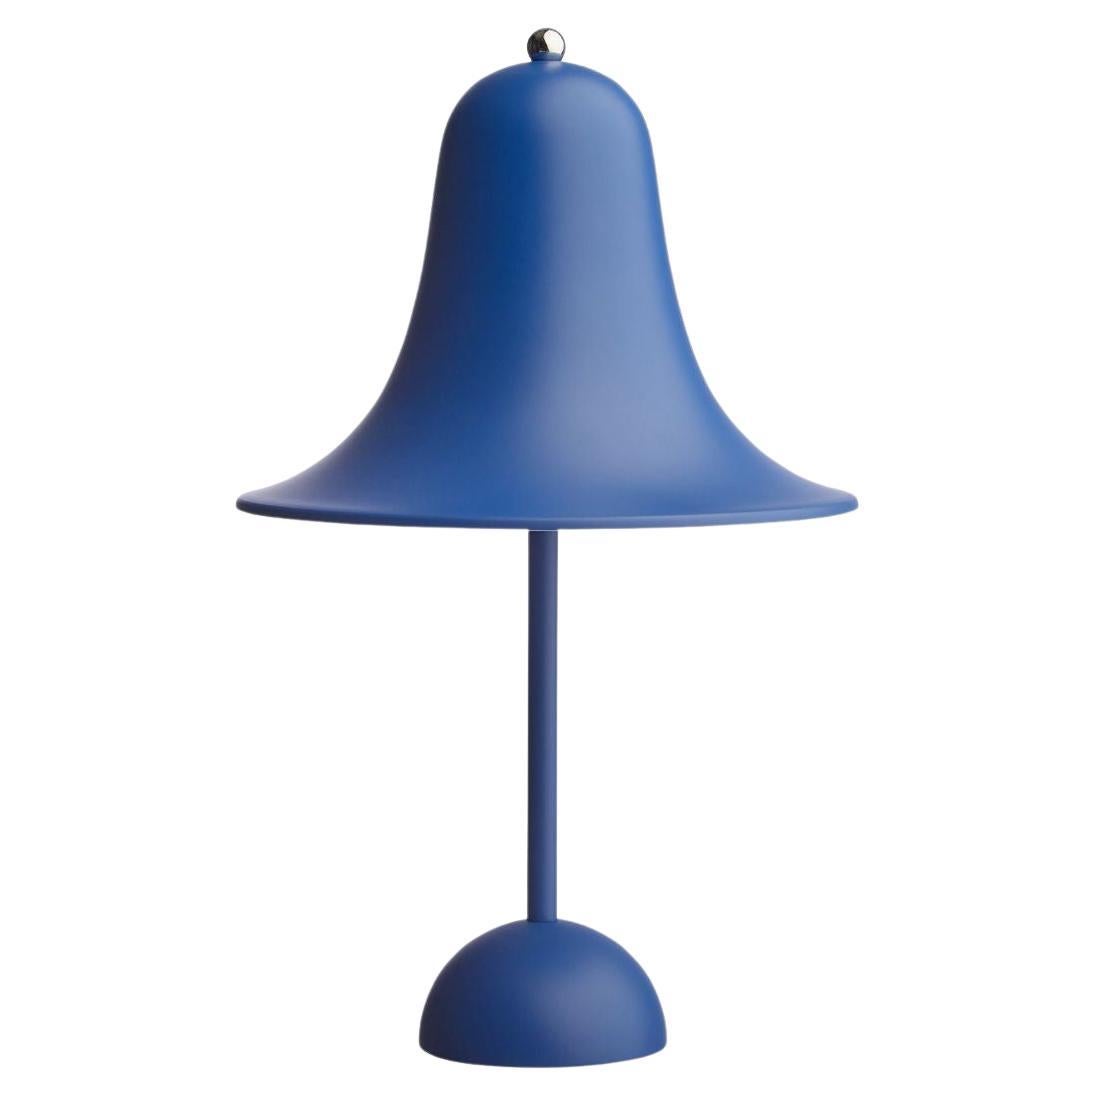 Verner Panton: Tischlampe „Pantop“ aus Metall und mattem Blau für Verpan